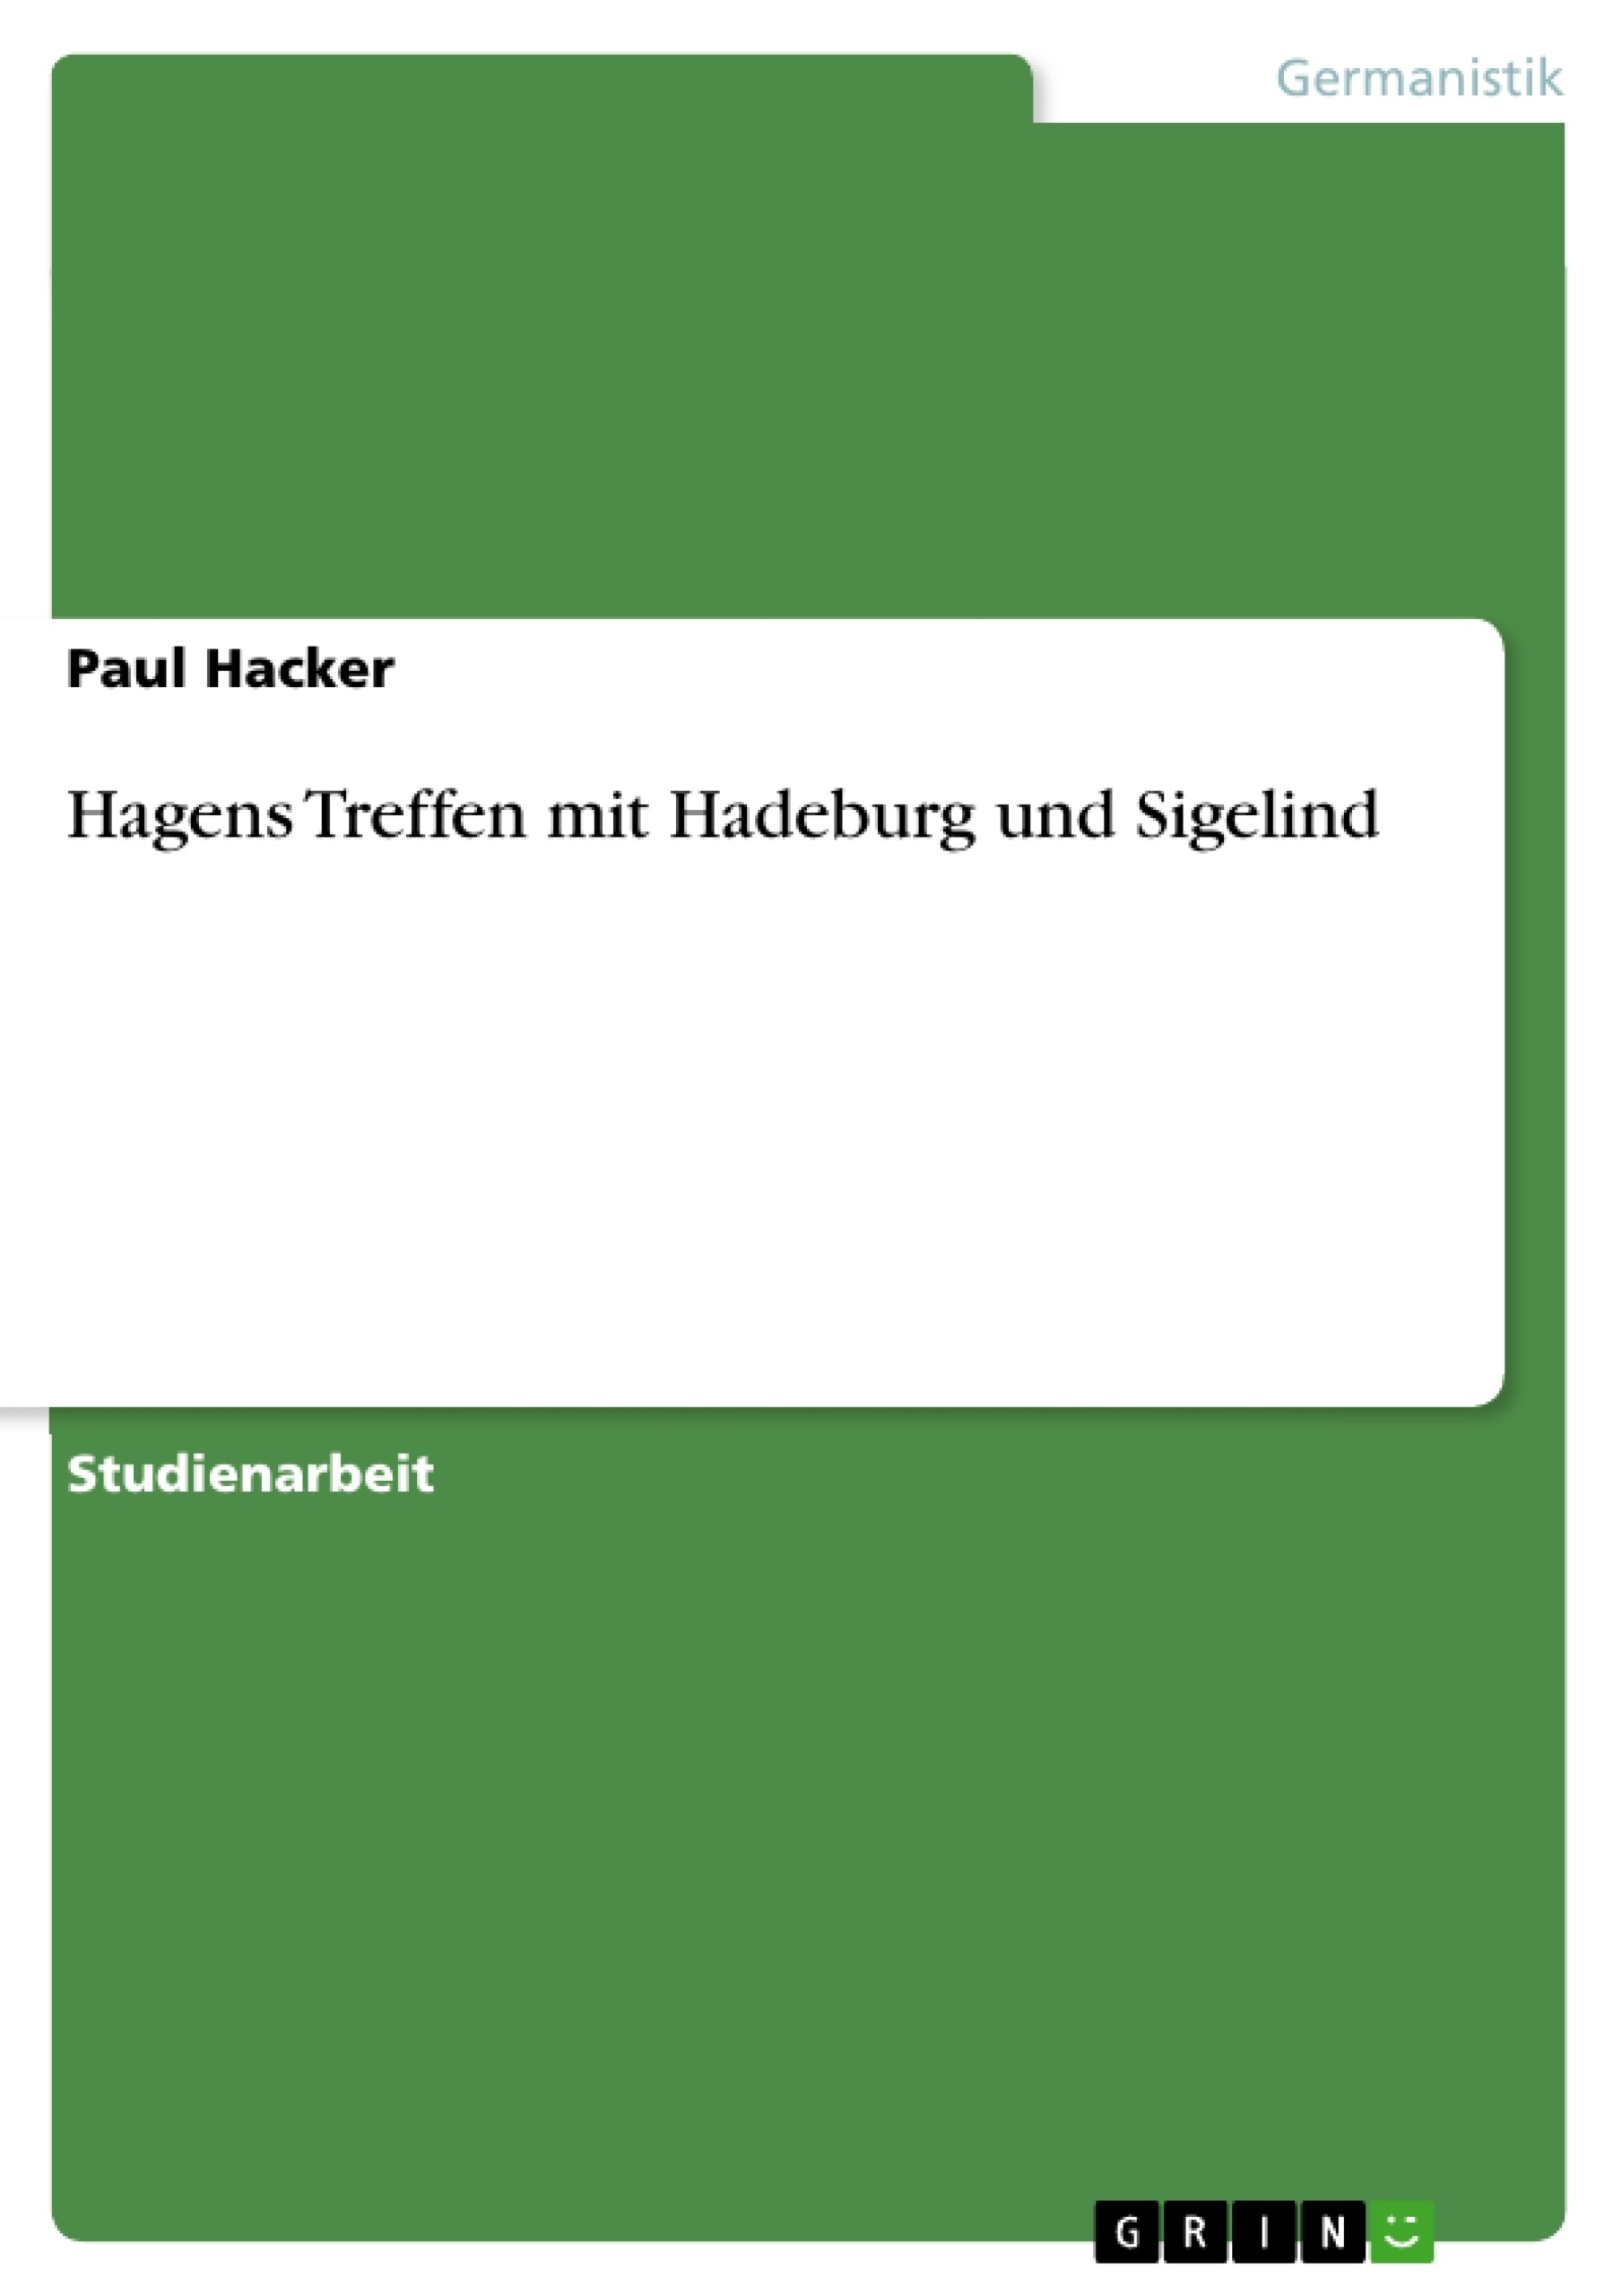 Title: Hagens Treffen mit Hadeburg und Sigelind